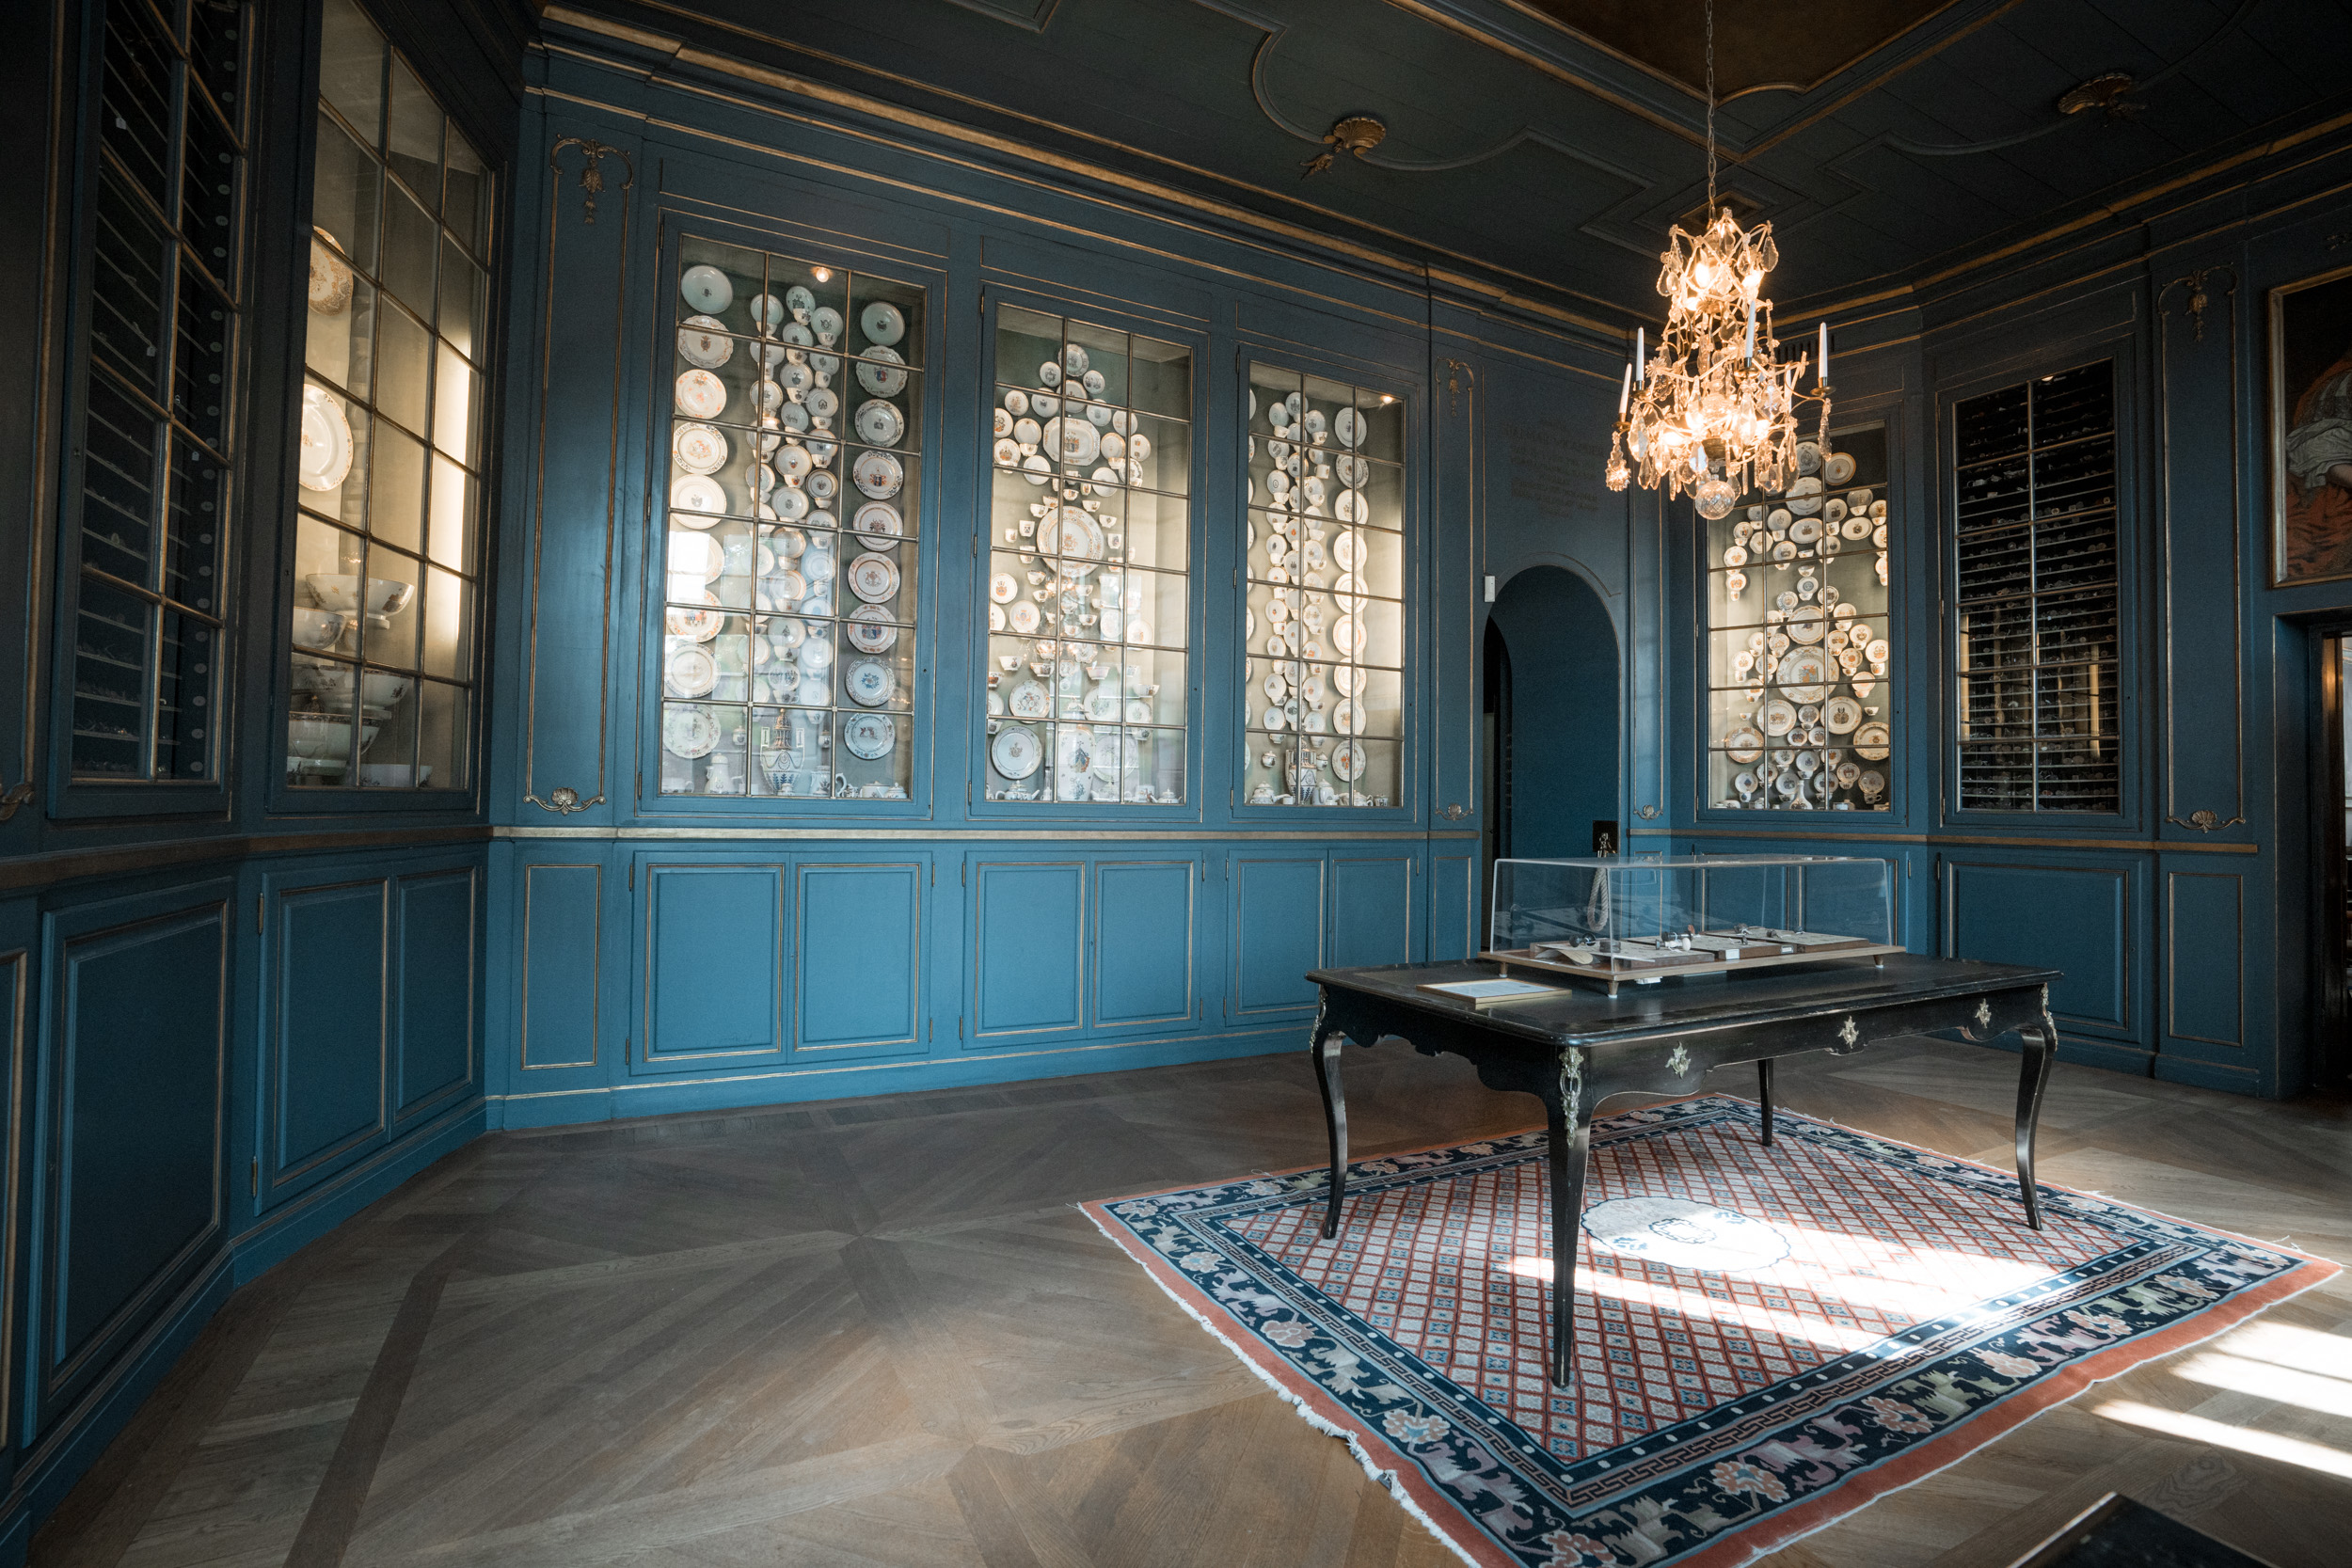 Collection de vaisselle bleue au Palais de la Noblesse (Riddarhuset) à Stockholm © J. Van Belle - WBI